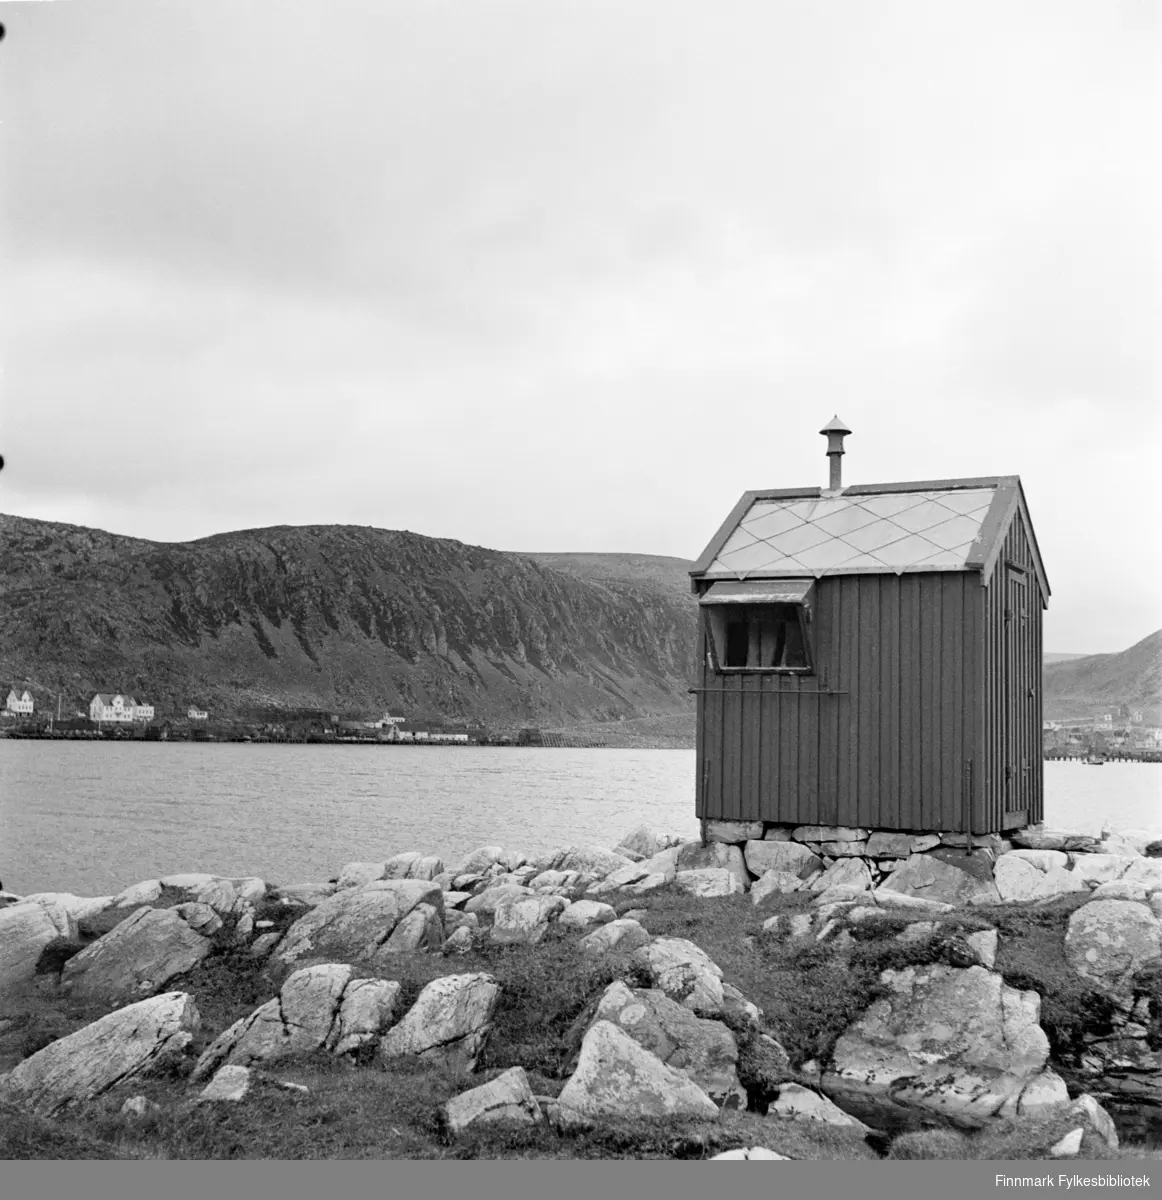 Kjøllefjord gamle lykt fotografert i 1940. Lykta og parafinhuset var det eneste som ble spart etter at tyskerne brant ned hele Kjøllefjord i 1944. Av praktiske grunner ble lykta spart for at de skulle kunne navigere langs kysten. Lykta kan i dag sees på museet til Folldalsbruket. Lykta ble satt opp allerede i 1884.